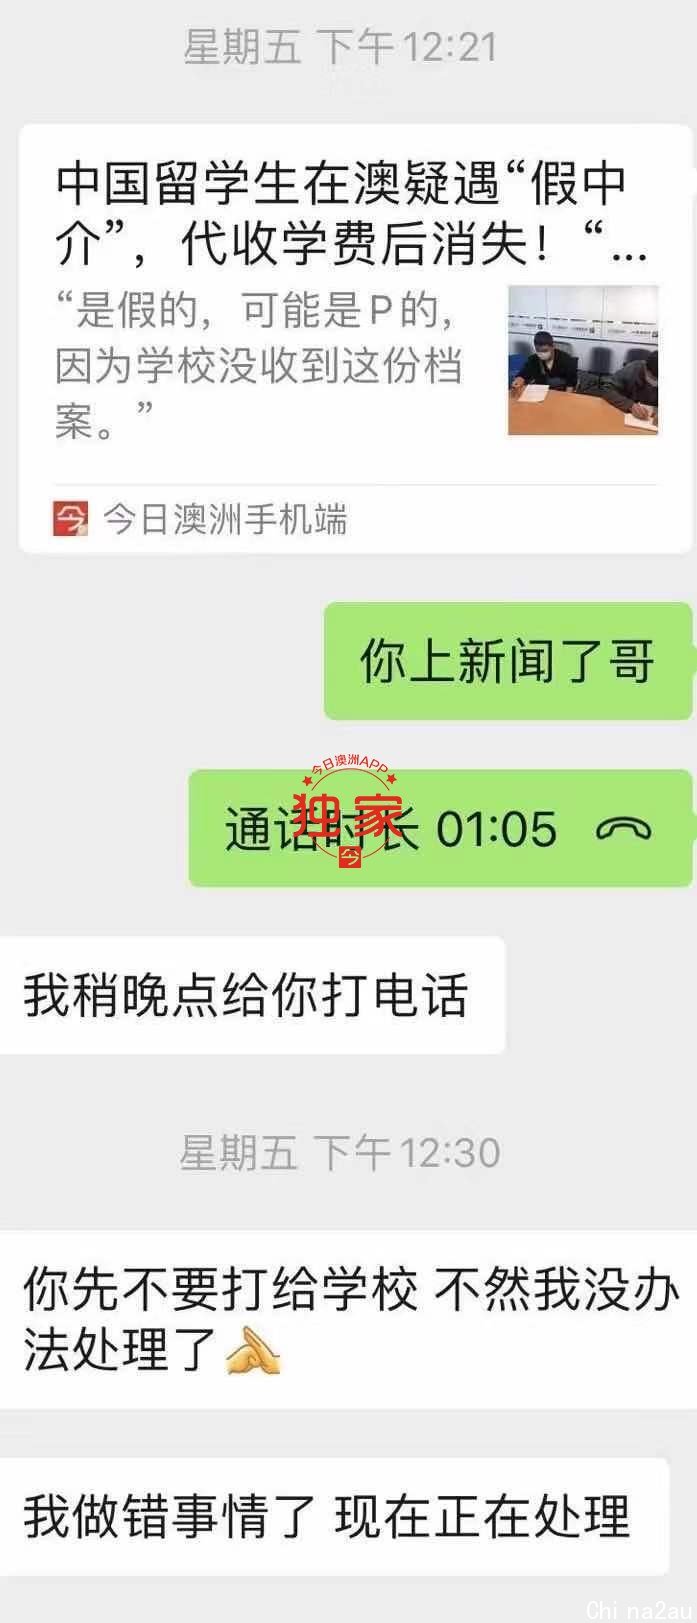 WeChat Image_20210316164410.jpg,12